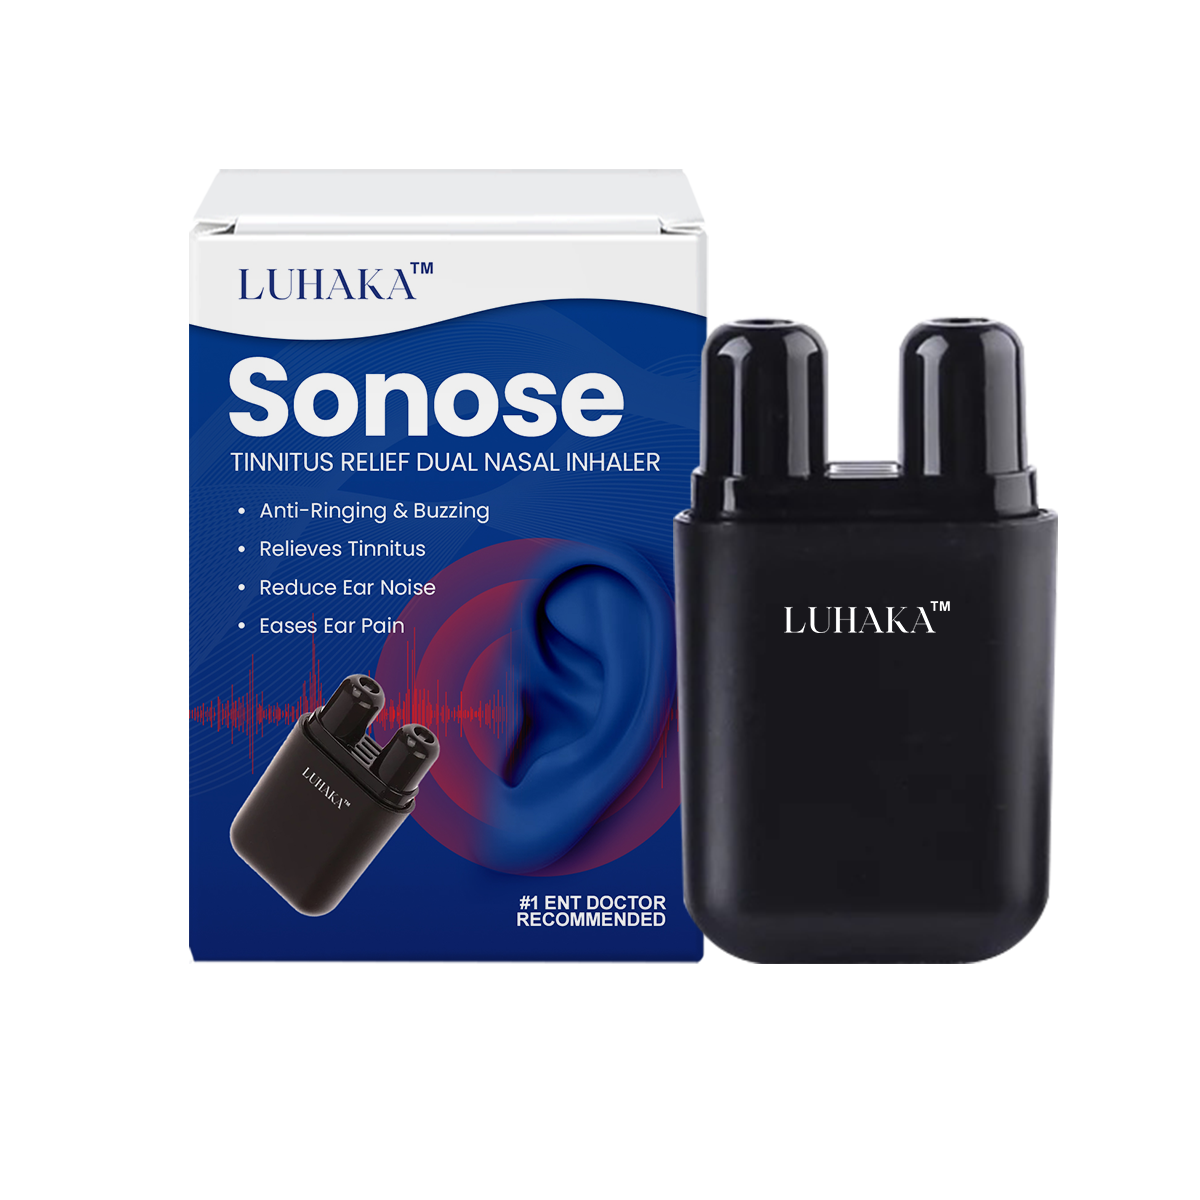 Luhaka™ Sonose Tinnitus Relief Dual Nasal Inhaler